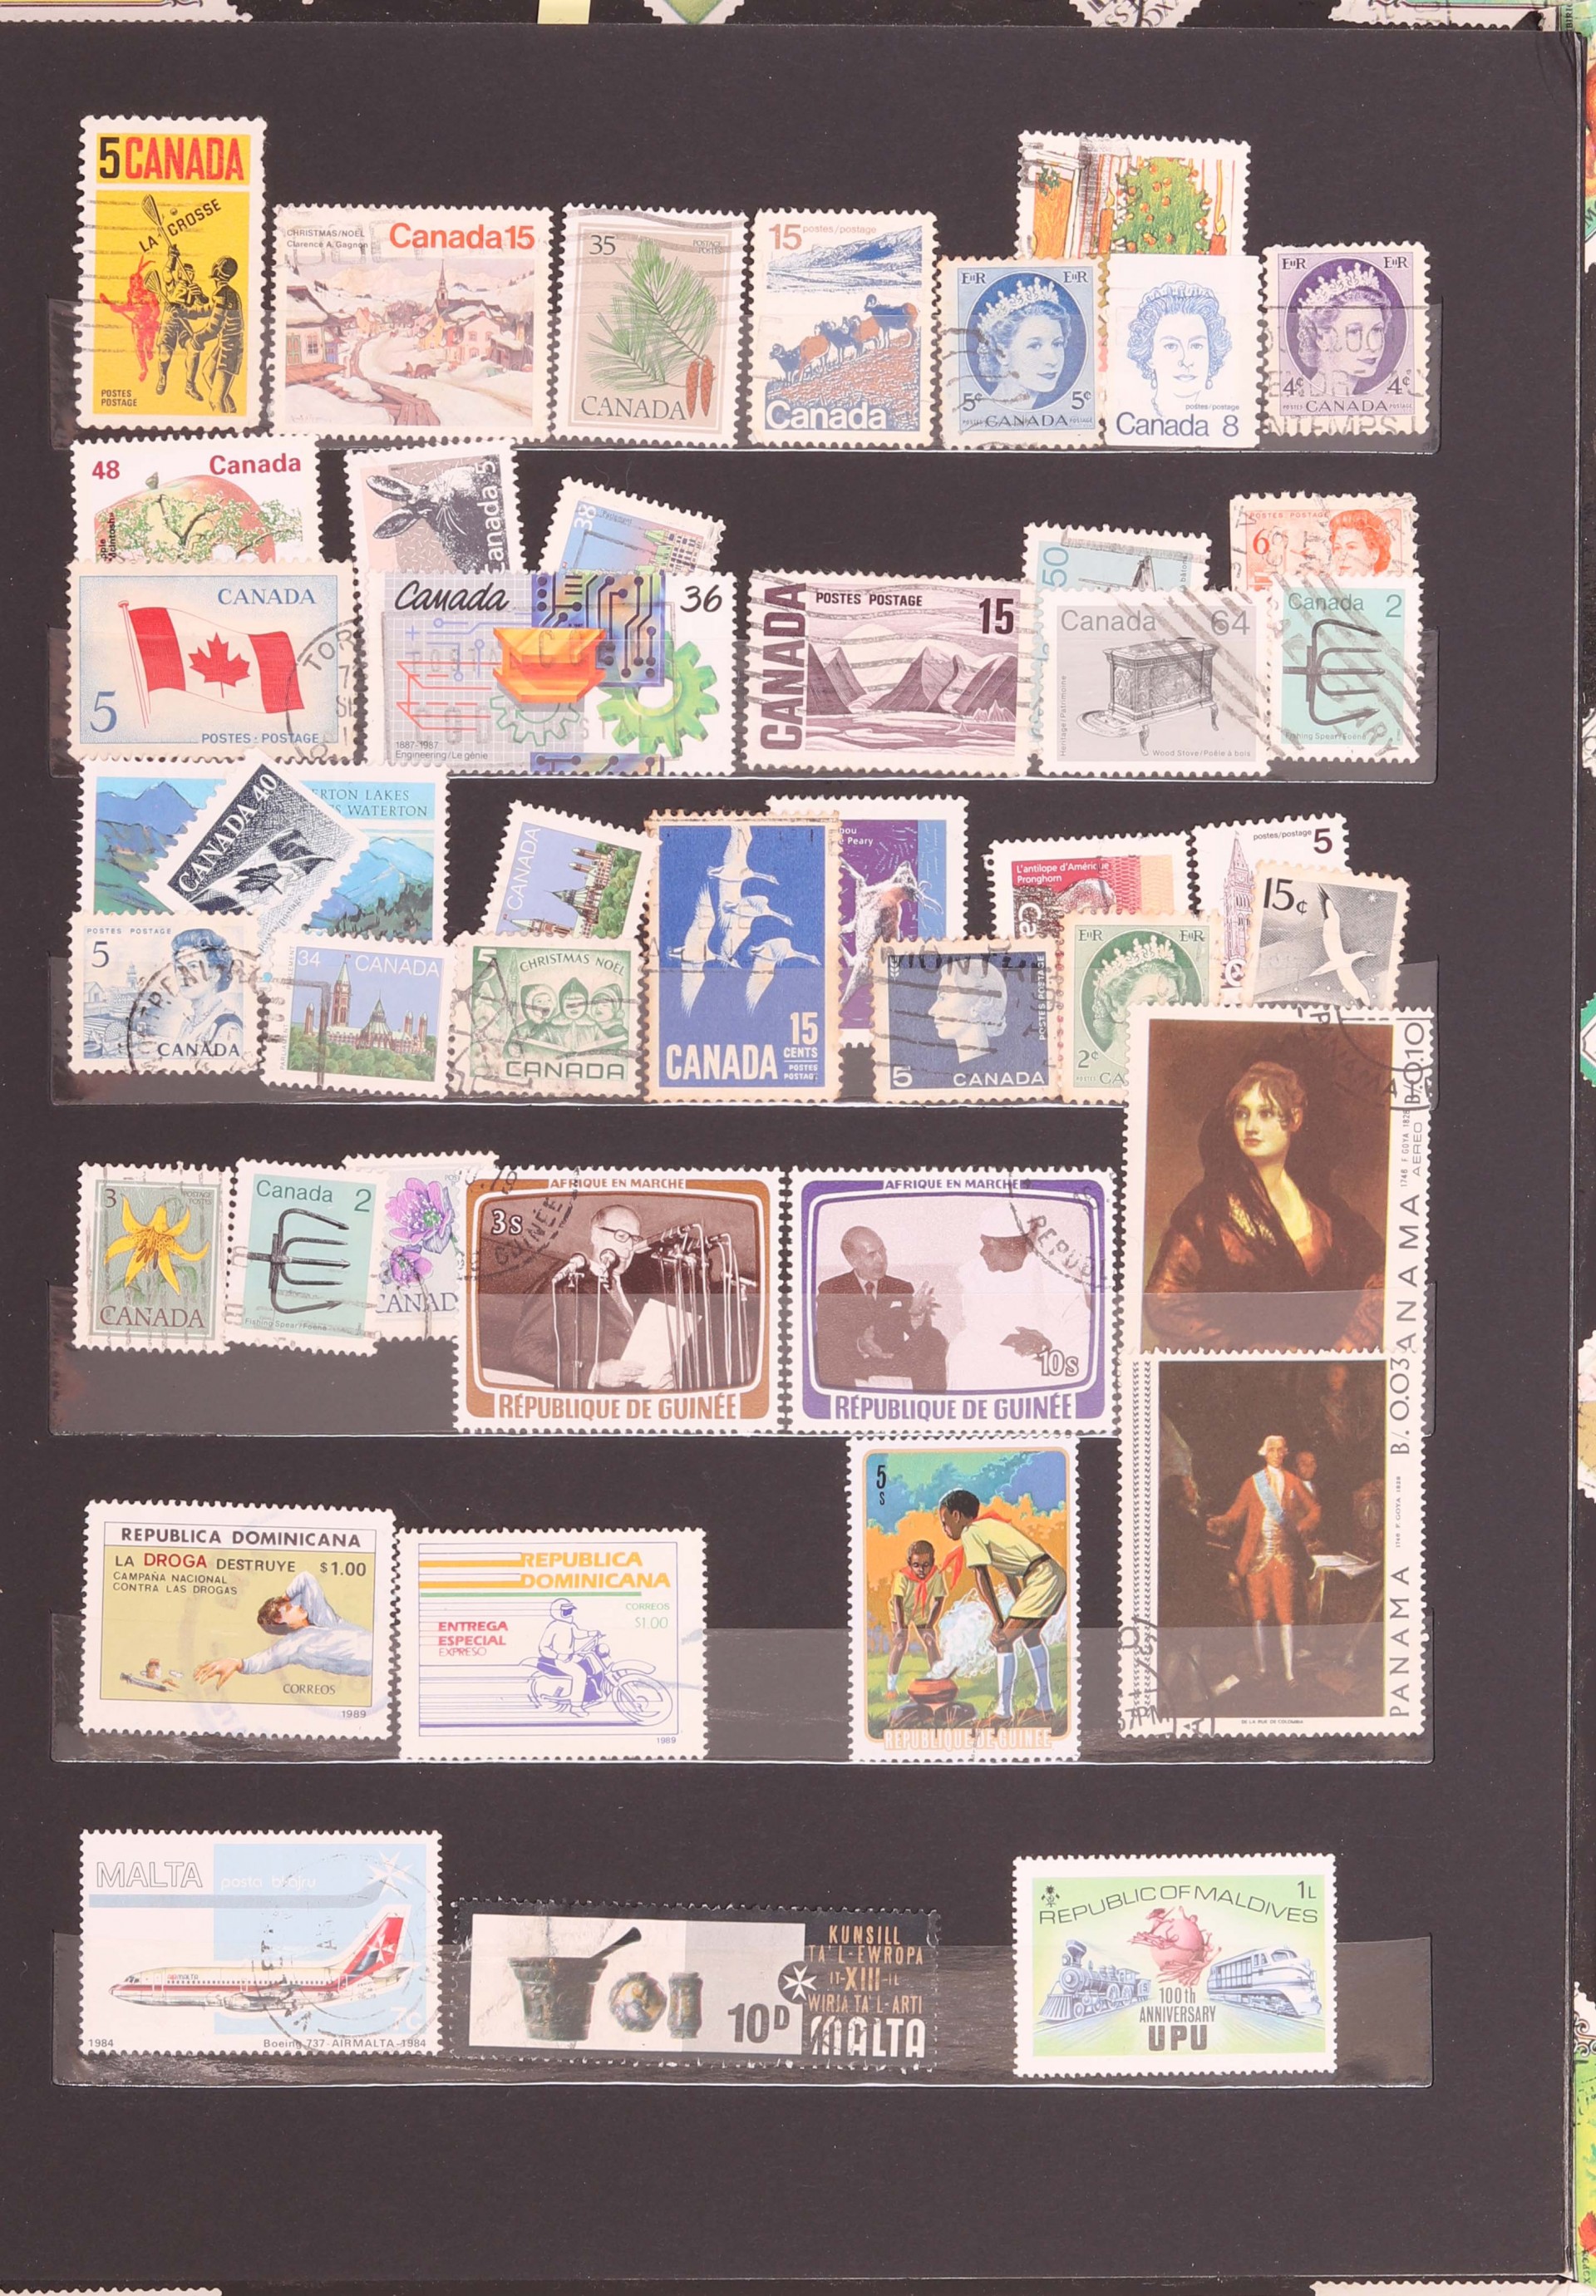 Coleção de cerca 500 selos de vários países mundiais, incluindo muitos das ex-colónias Portuguesas no ultramar